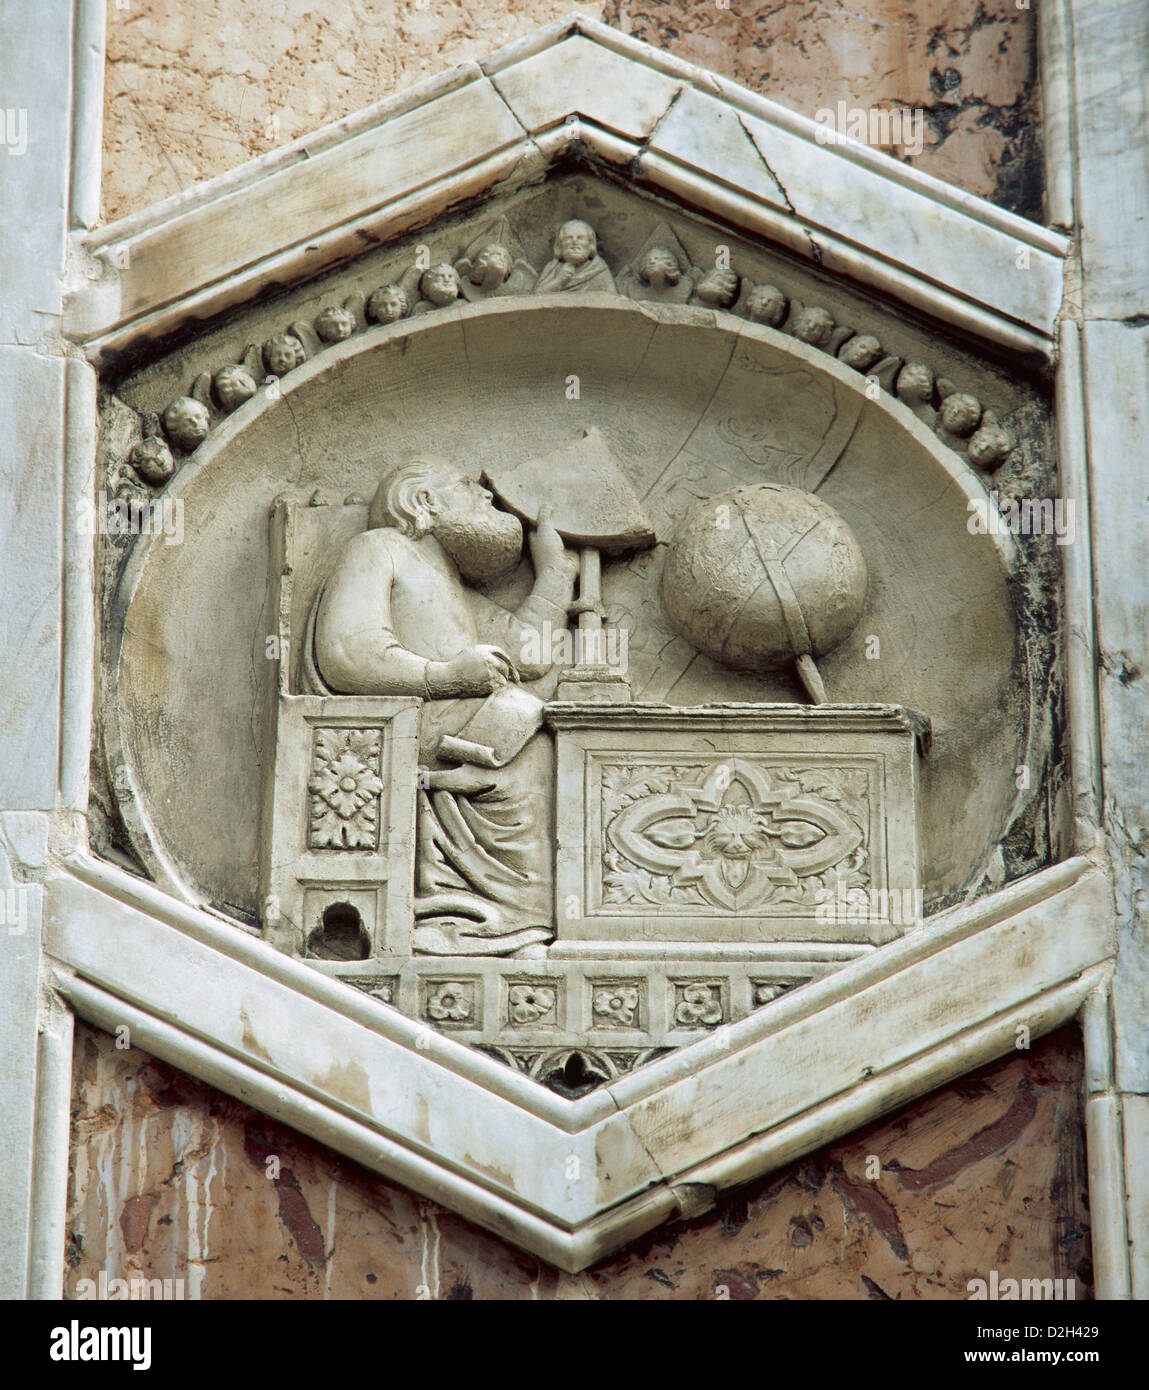 Gionitus. Inventeur de l'astronomie, (1334-1336). Dans la décharge exagonal panneaux de l'hôtel Campanile de la cathédrale de Florence. L'Italie. Banque D'Images